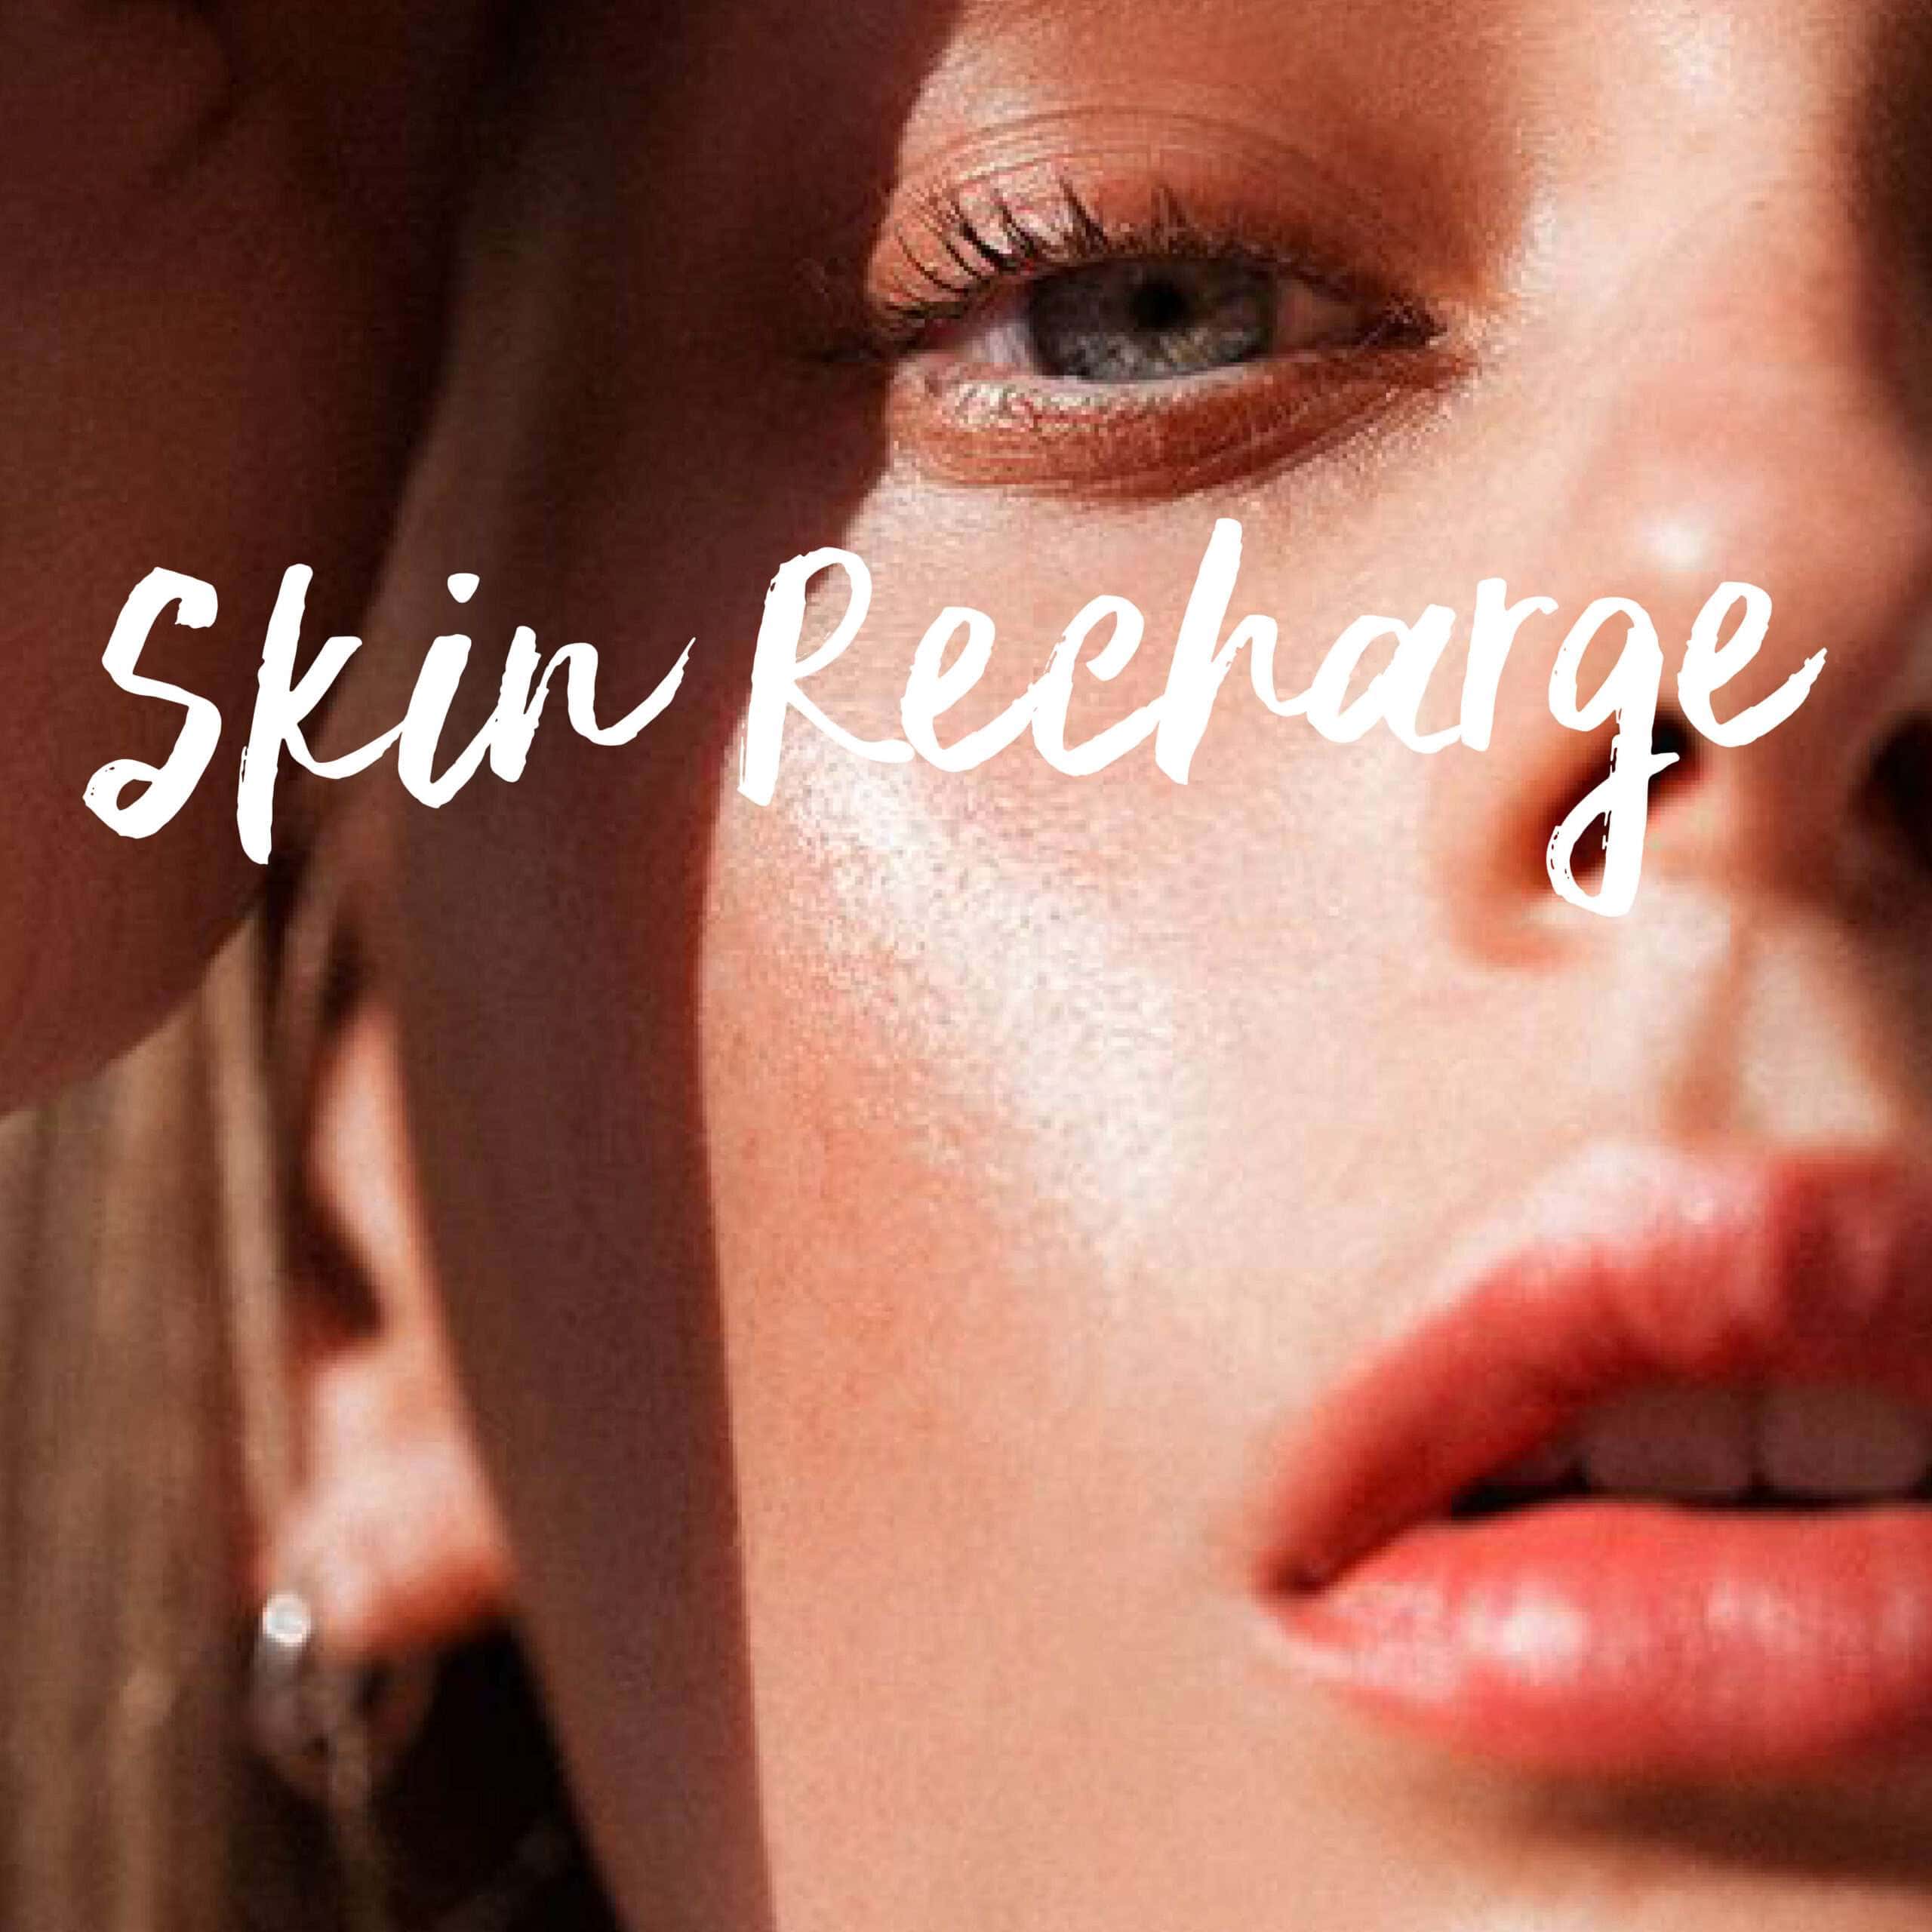 Skin Recharge , เติมพลังให้ผิว, หน้าใส, ผิวดี, ผิวขาว